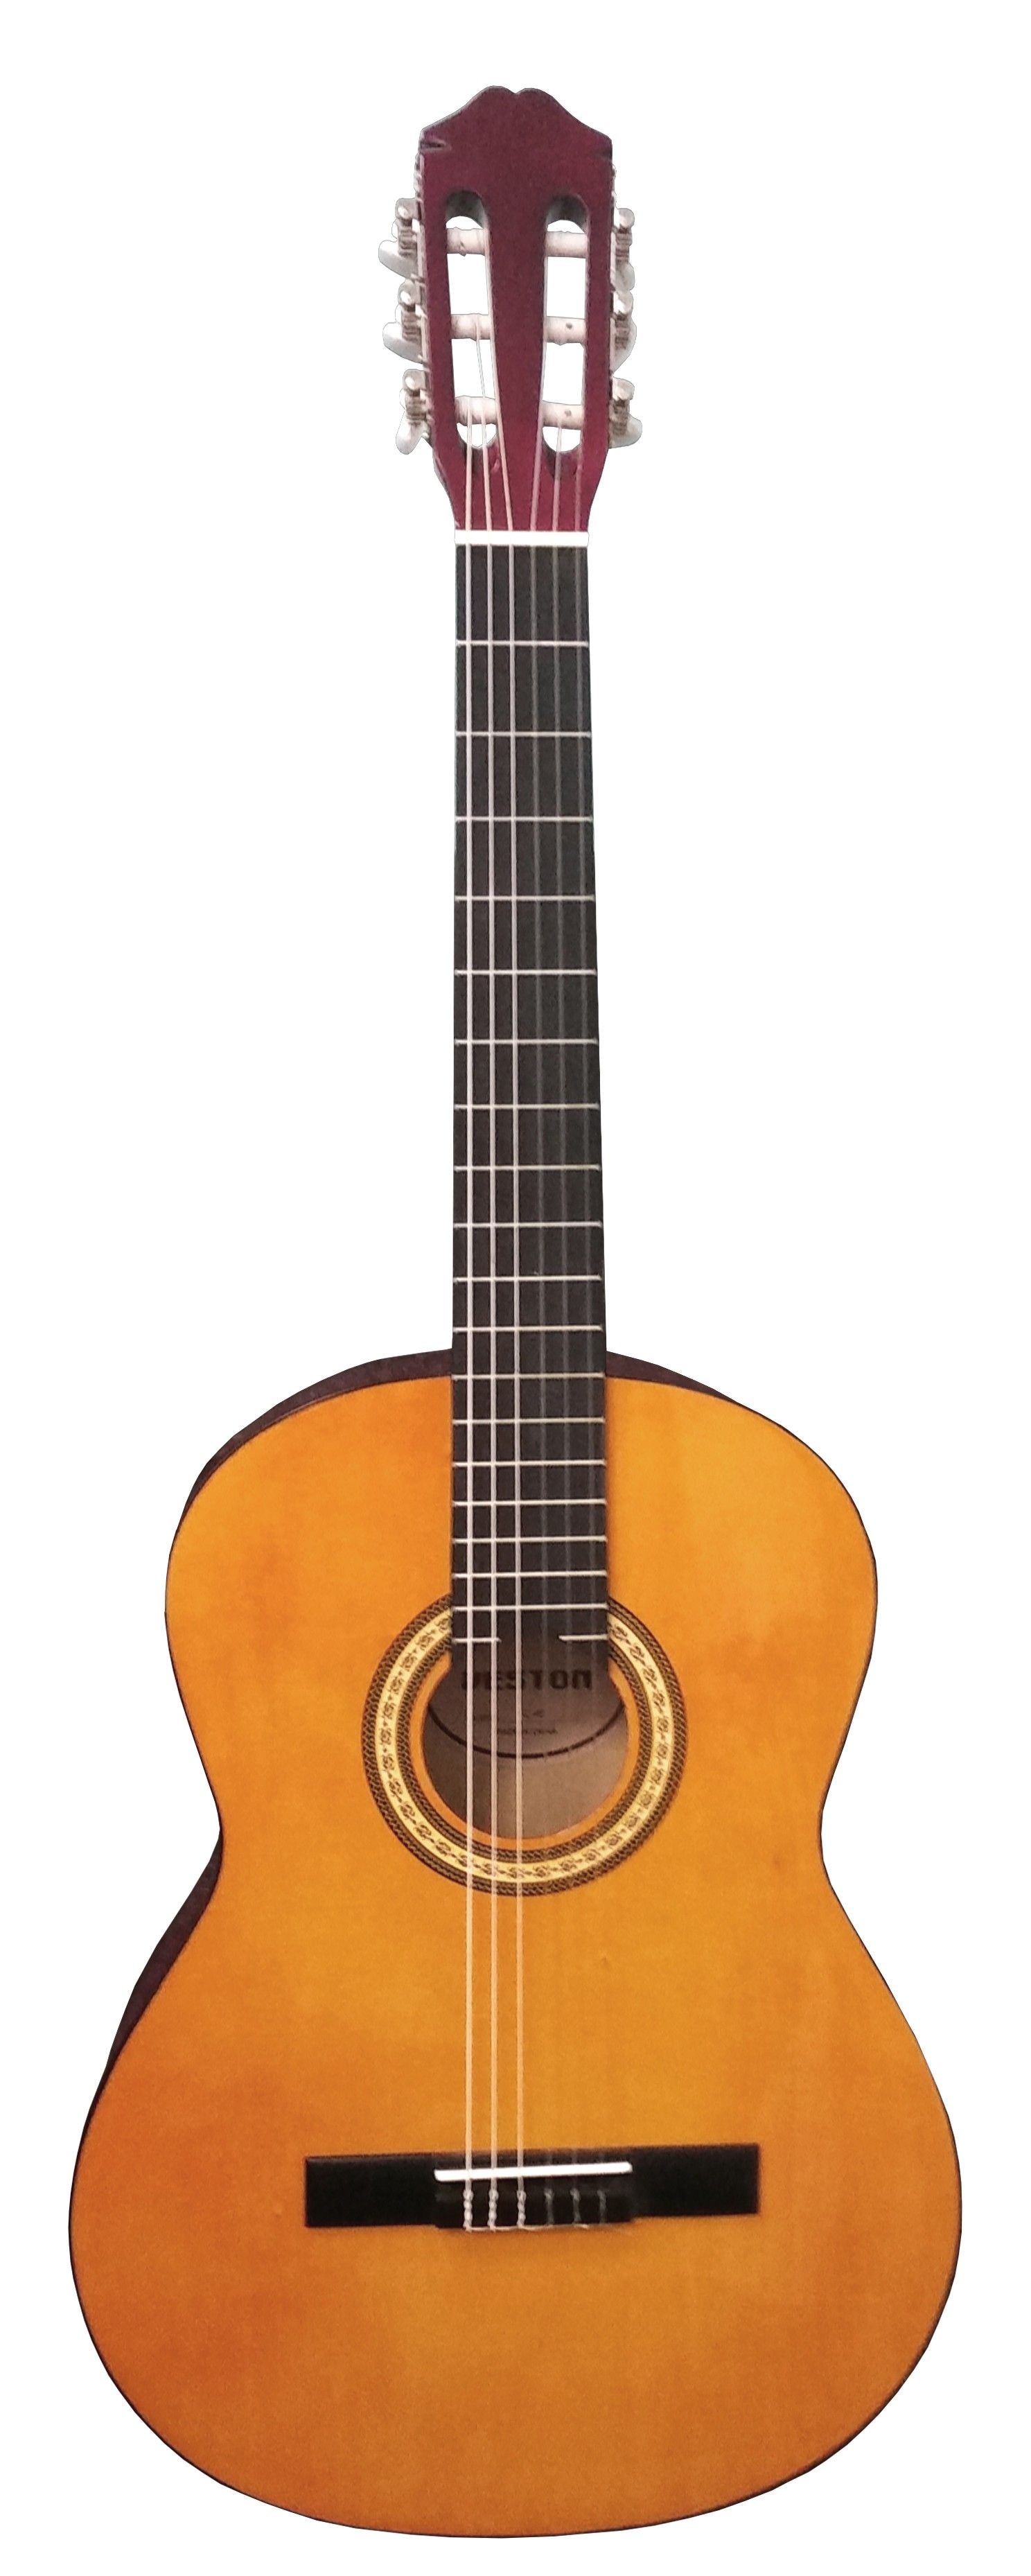 VESTON C-35 NA классическая гитара 4/4, цвет: натуральный